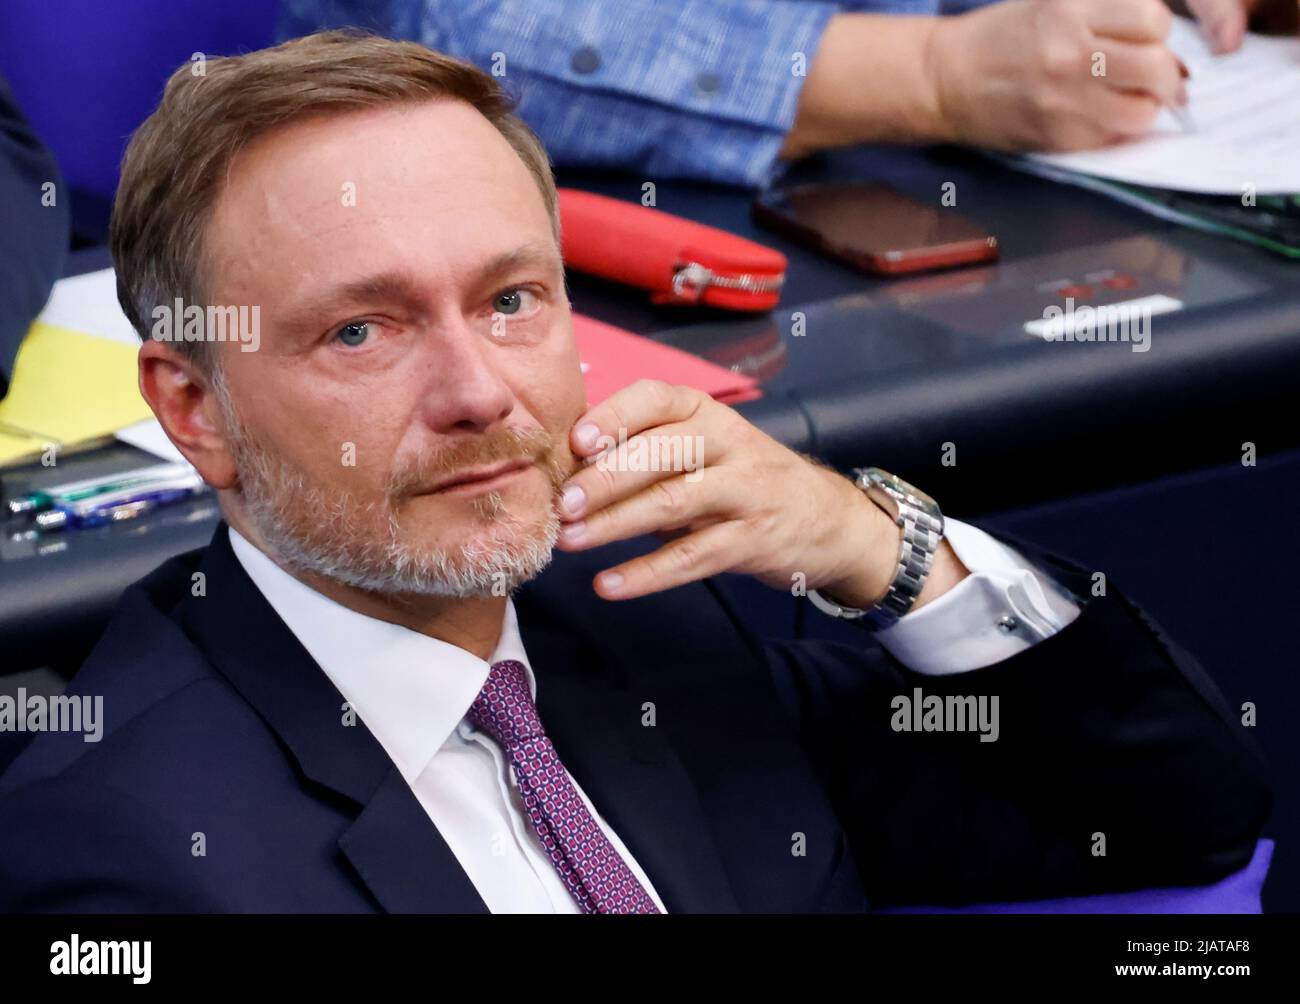 El Ministro de Finanzas alemán Christian Lindner asiste a una sesión de la Cámara Baja del parlamento de Alemania, el Bundestag, en Berlín, Alemania, el 1 de junio de 2022. REUTERS/Hannibal Hanschke Foto de stock